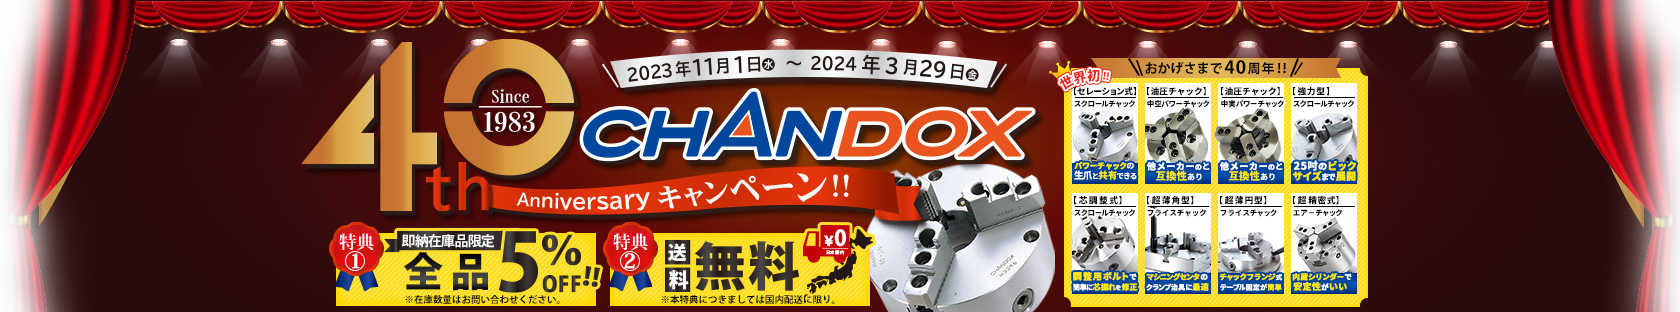 CHANDOX おかげさまで40周年 Anniversaryキャンペーン